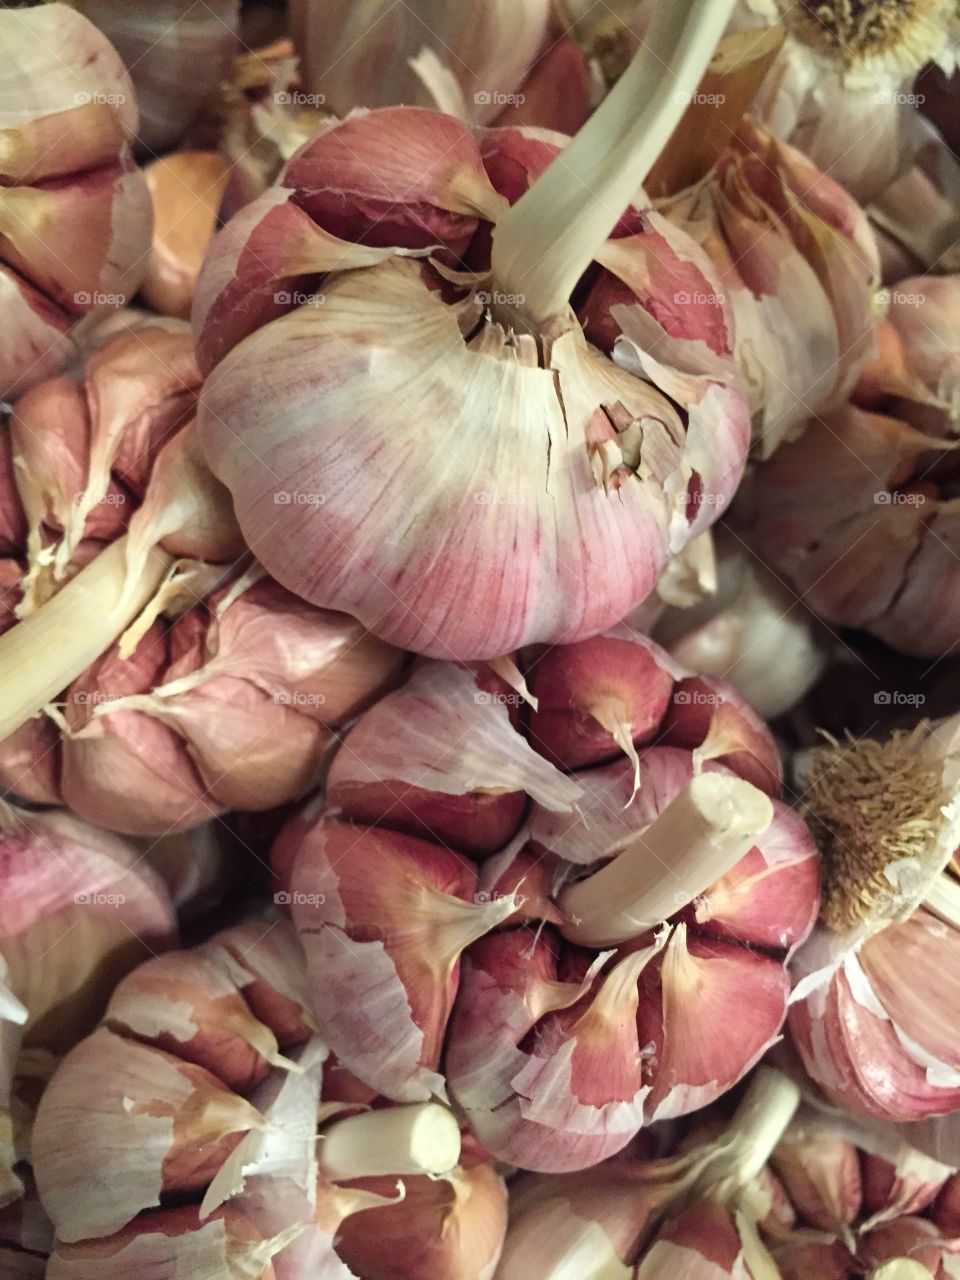 Only garlic 